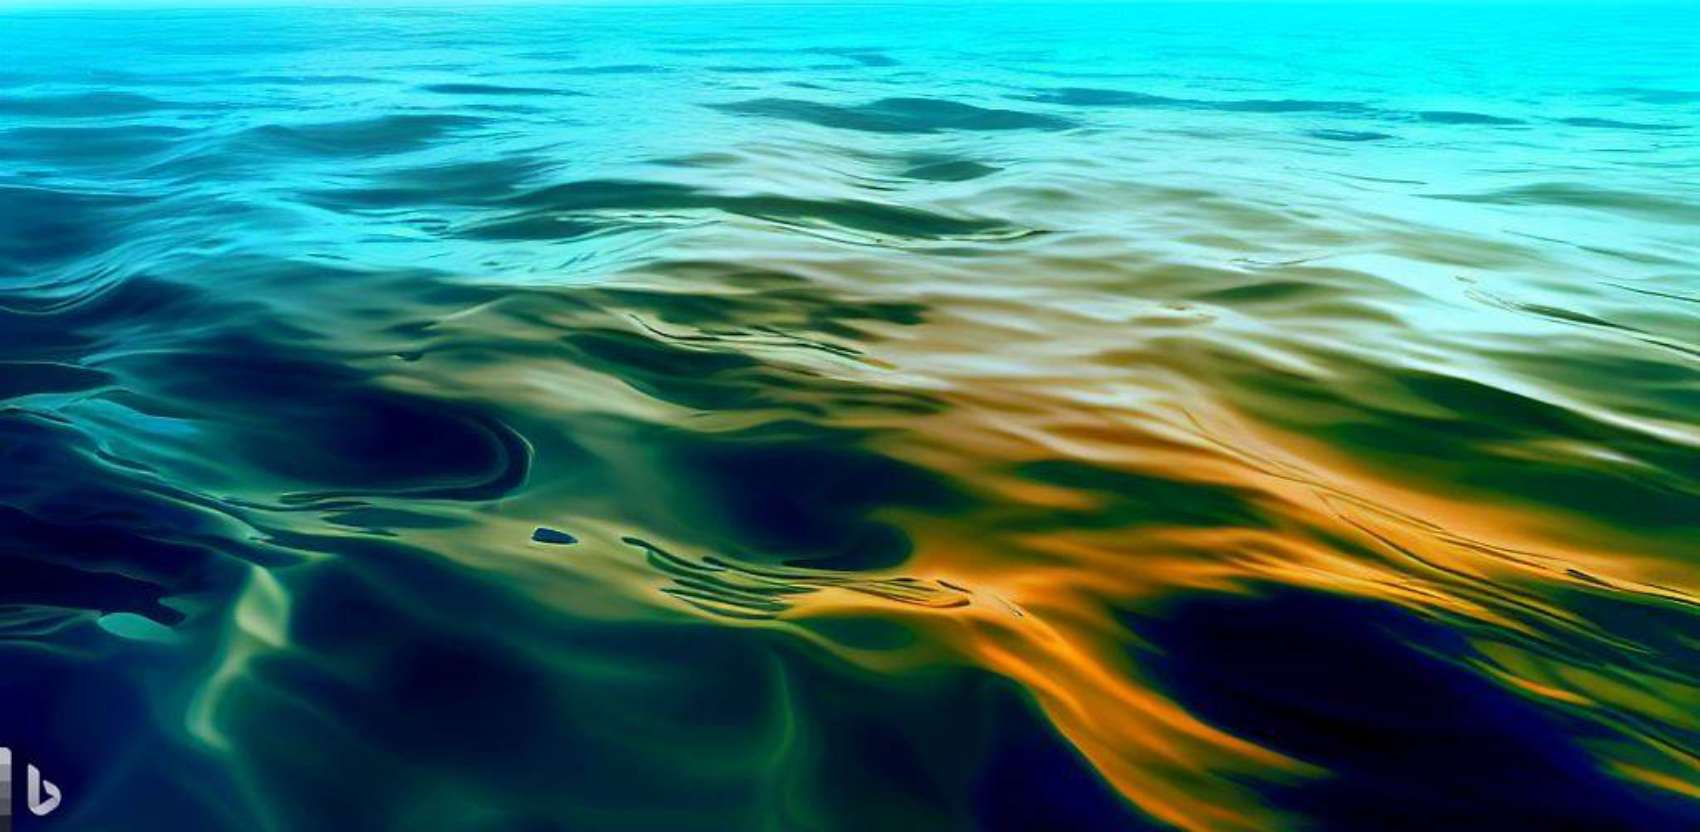 Les 3 raisons qui expliquent la surchauffe des océans